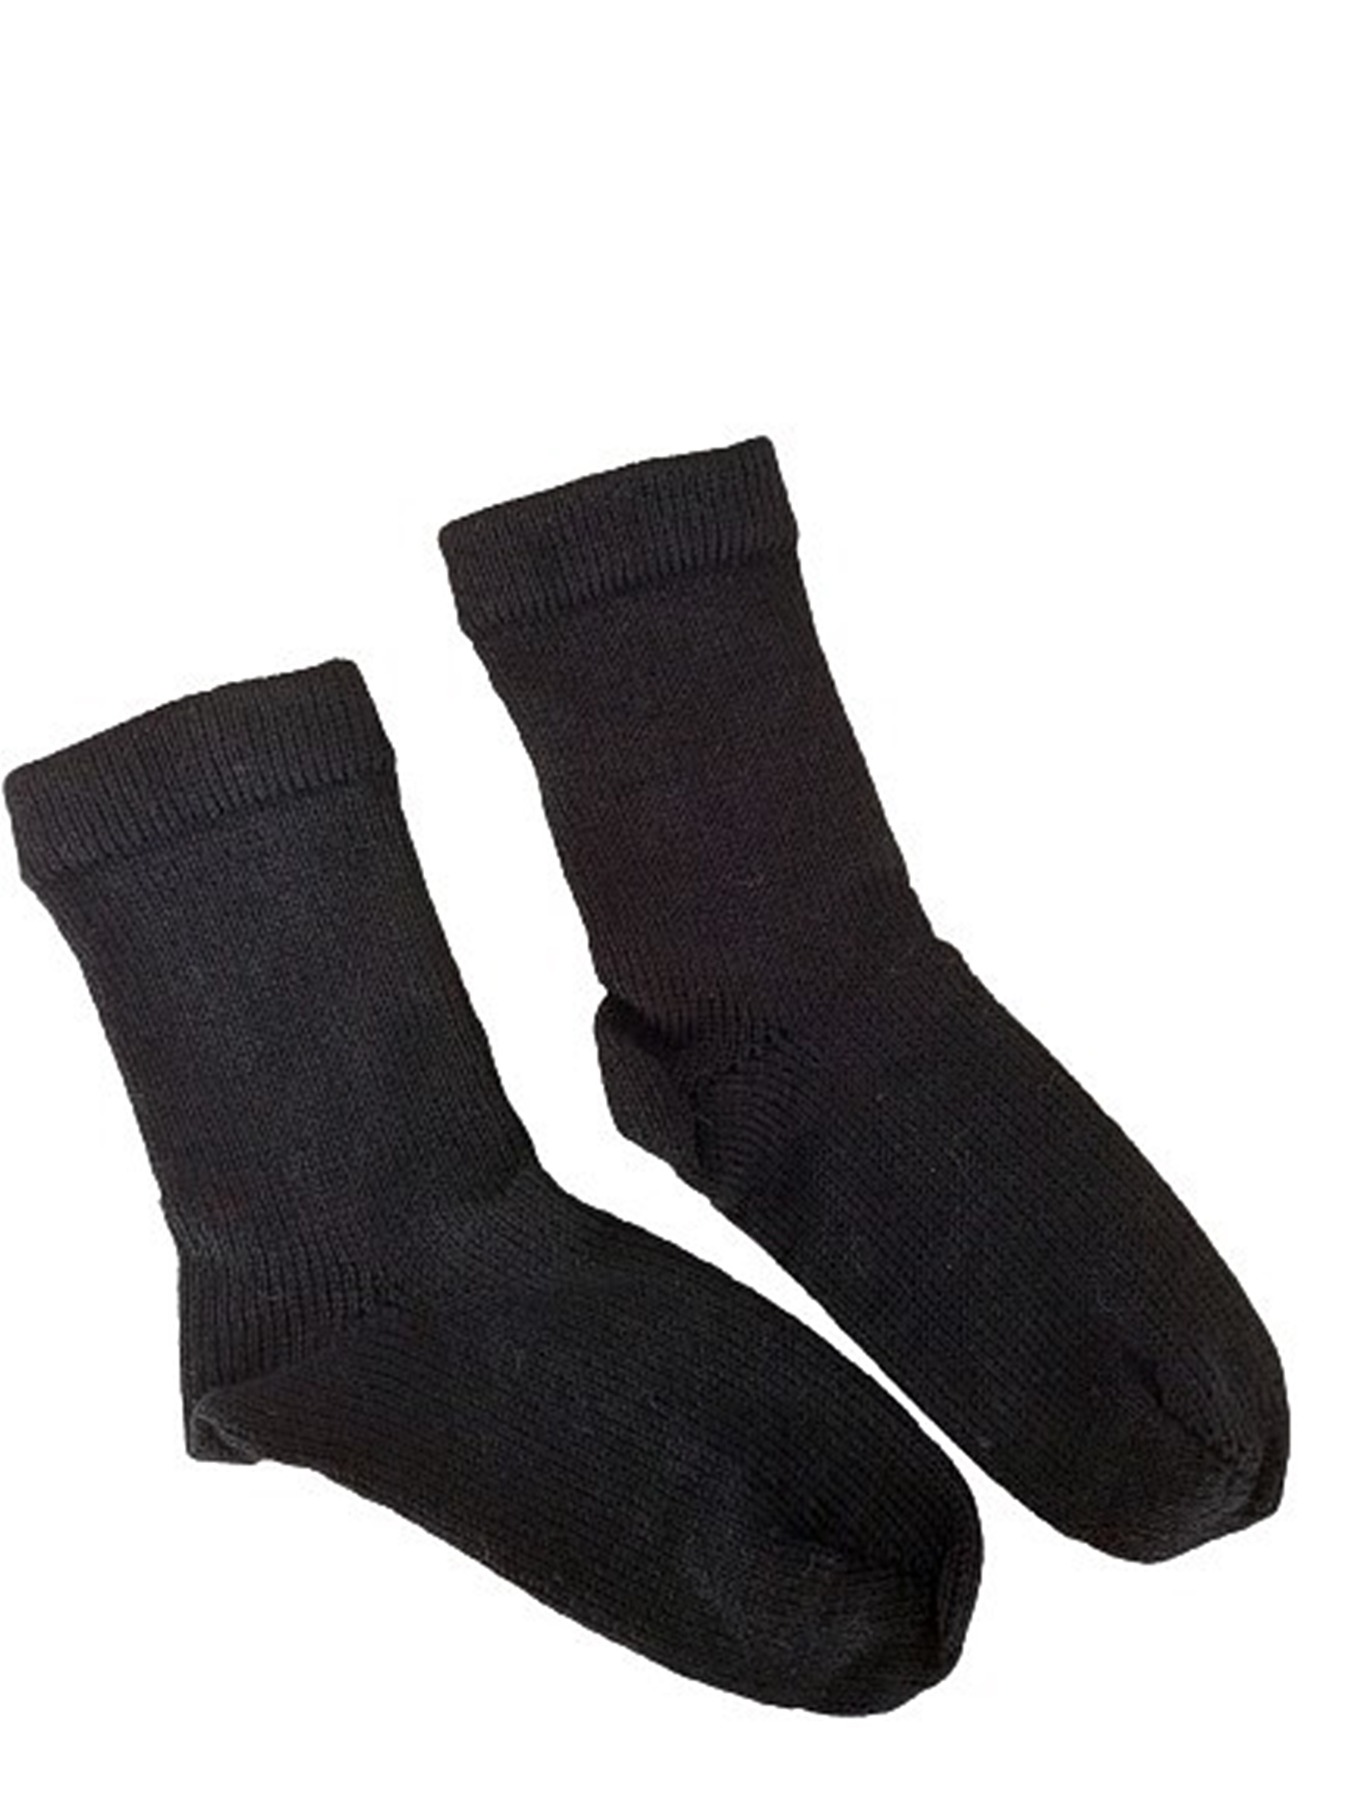 Größe 38/39 - Socken in klassischem Schwarz